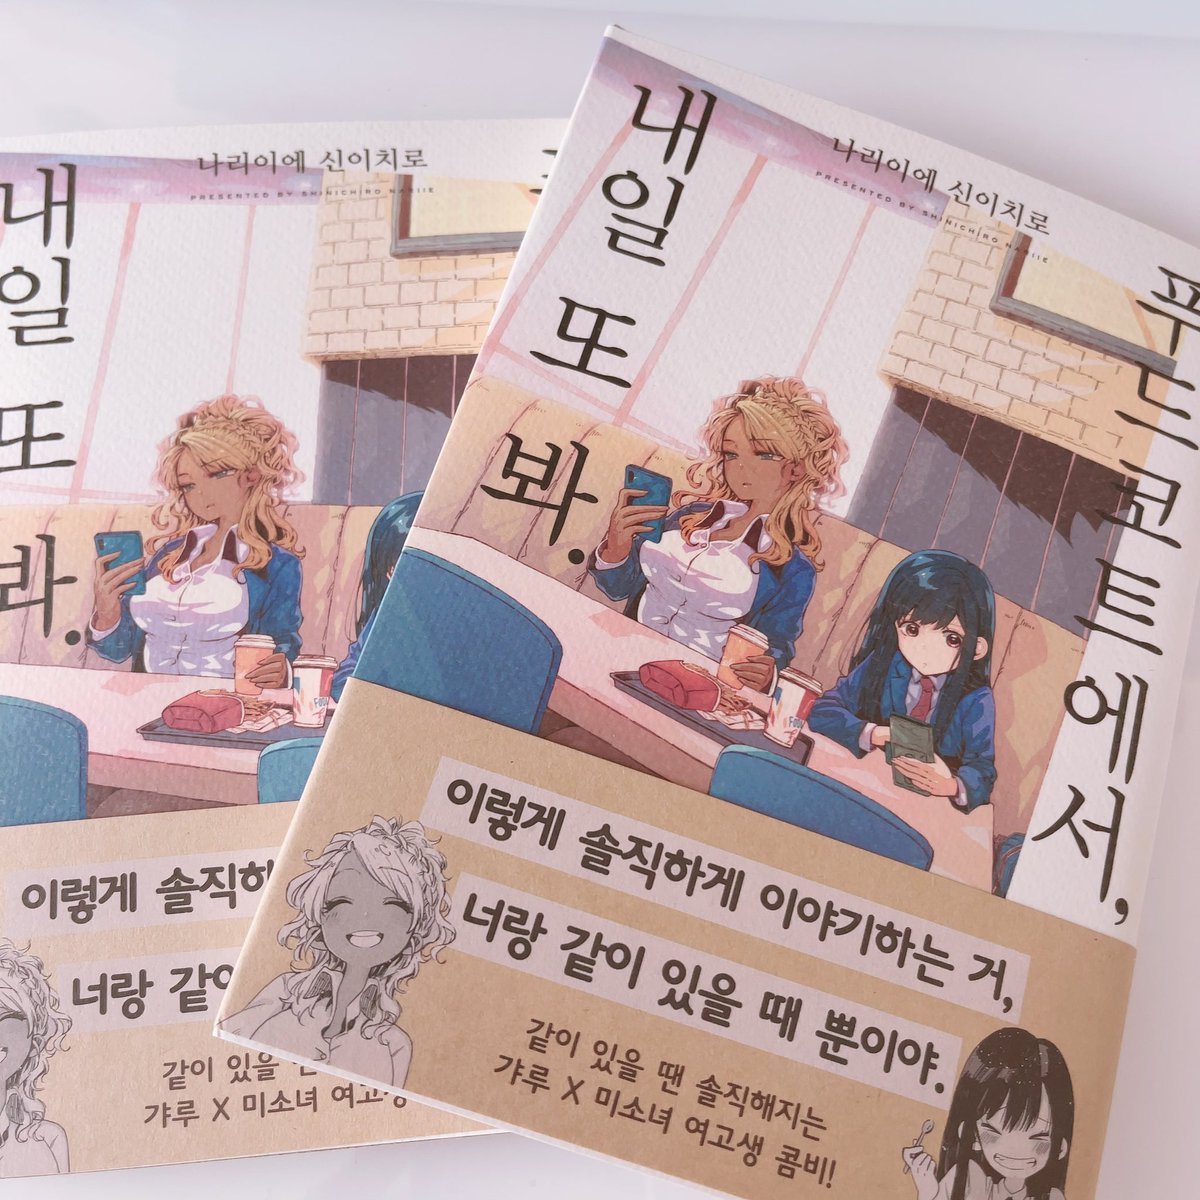 「フードコートで、また明日。」の韓国語版献本が届きました〜。  すごい!なんて書いてあるかわからない…!笑  英語版も韓国語版も作っていただけて嬉しいです。これからも連載がんばります〜。  